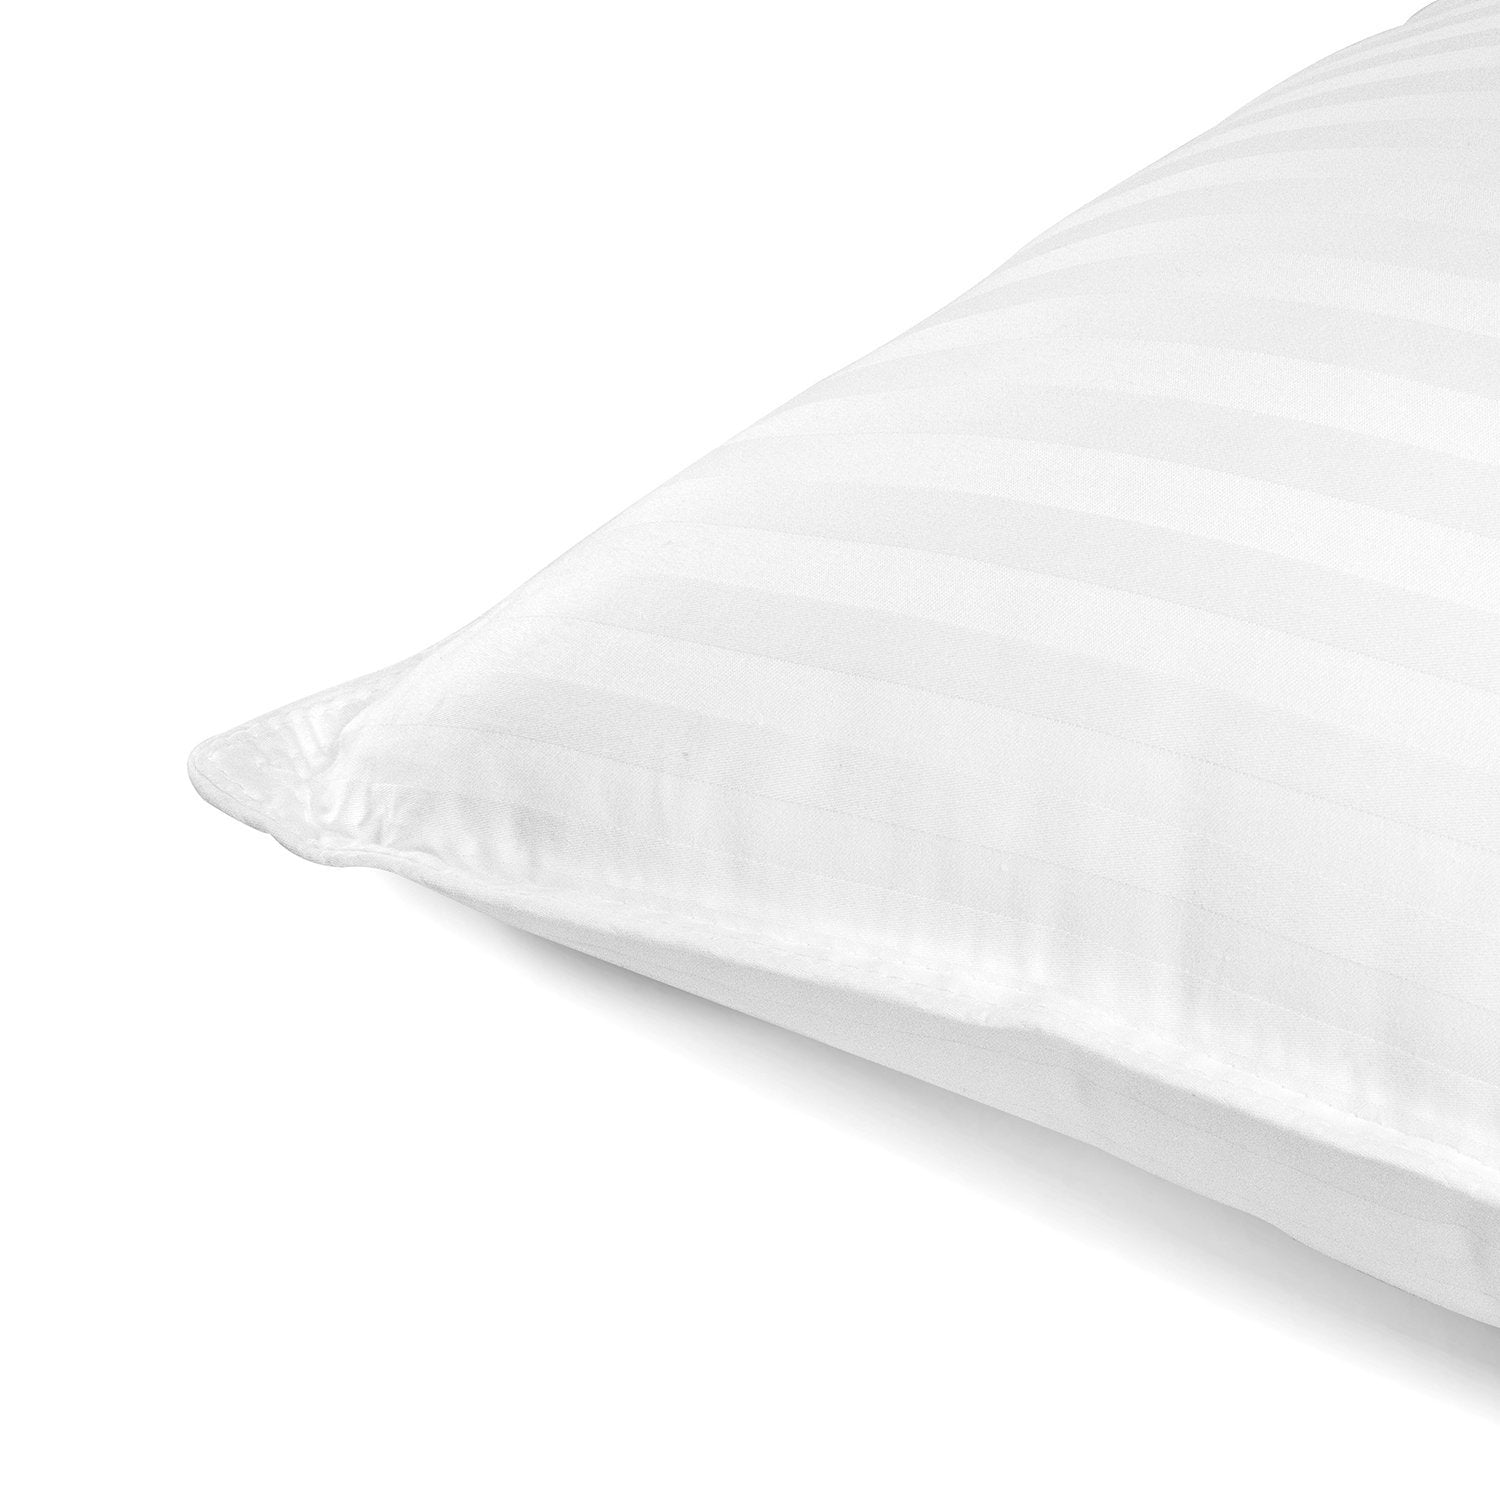 Beckham Luxury Linens Hotel Pillows